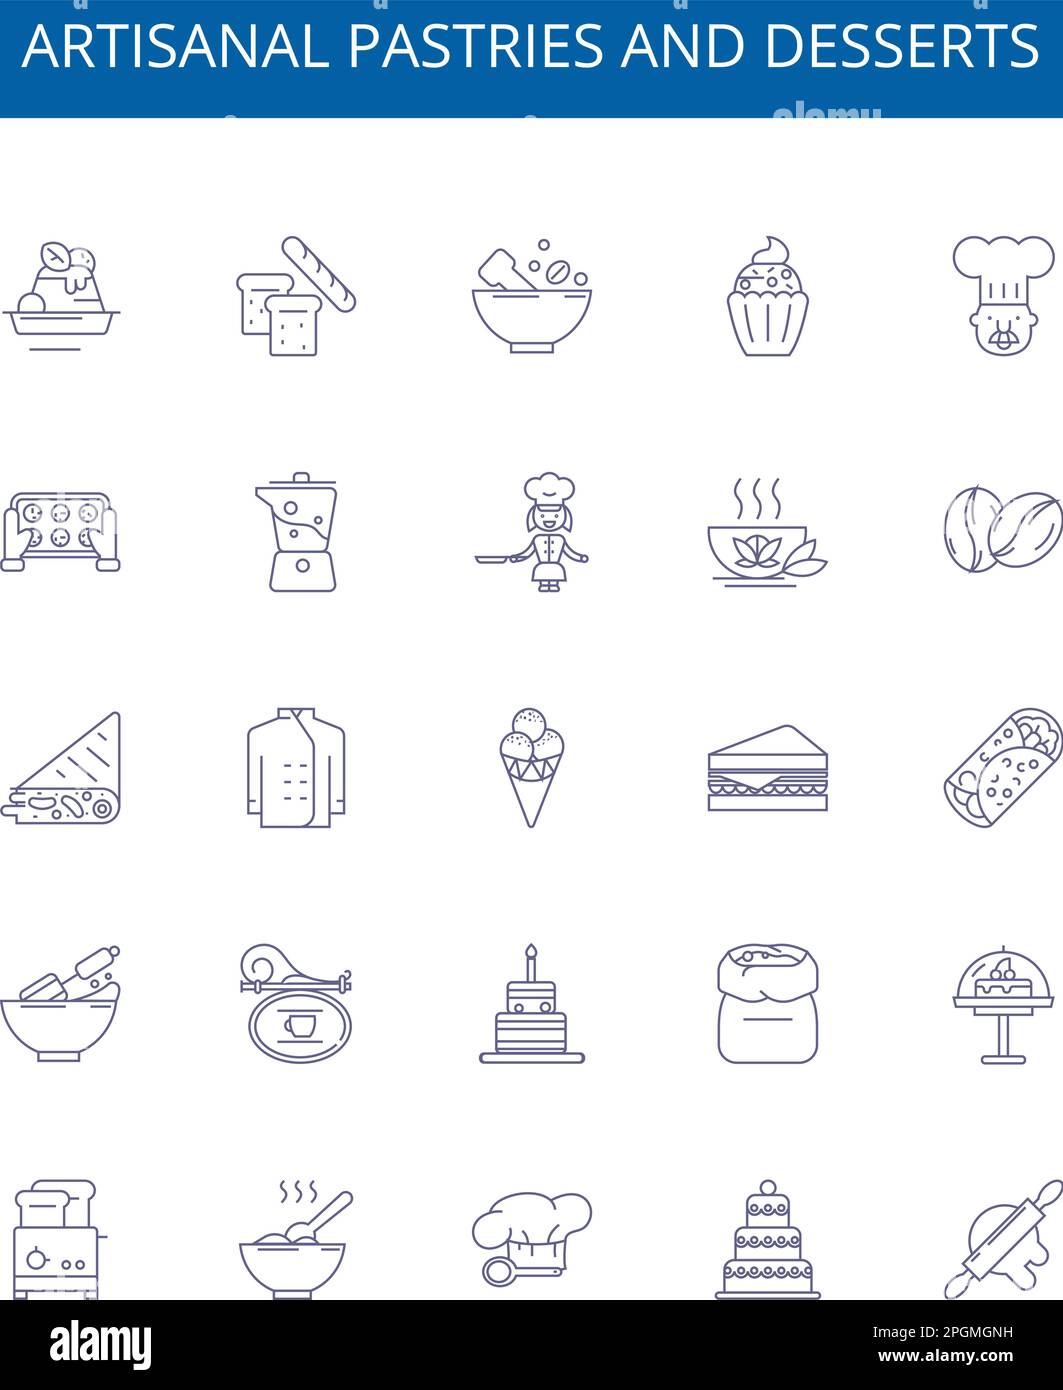 Handwerklich hergestelltes Gebäck und Desserts stehen auf Symbolschildern. Design-Sammlung von Konfektionen, Gebäck, Desserts, handwerklich, gebacken, Kuchen, Cupcakes, Süßigkeiten Stock Vektor